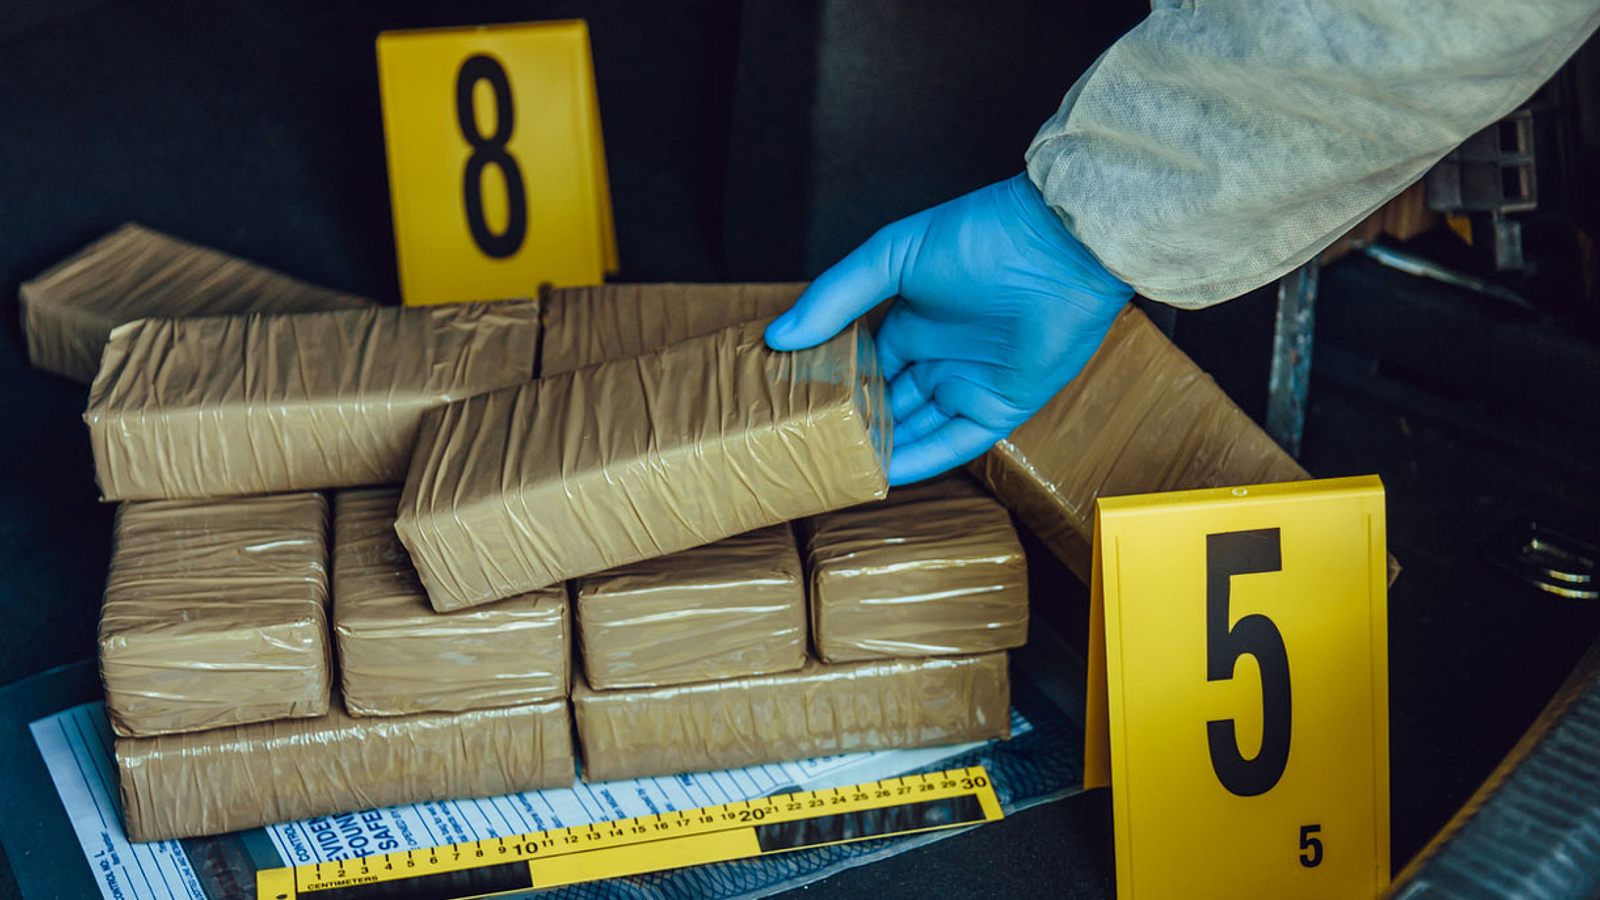 384 Kilogramm reines Kokain in irrem Versteck gefunden | Männersache